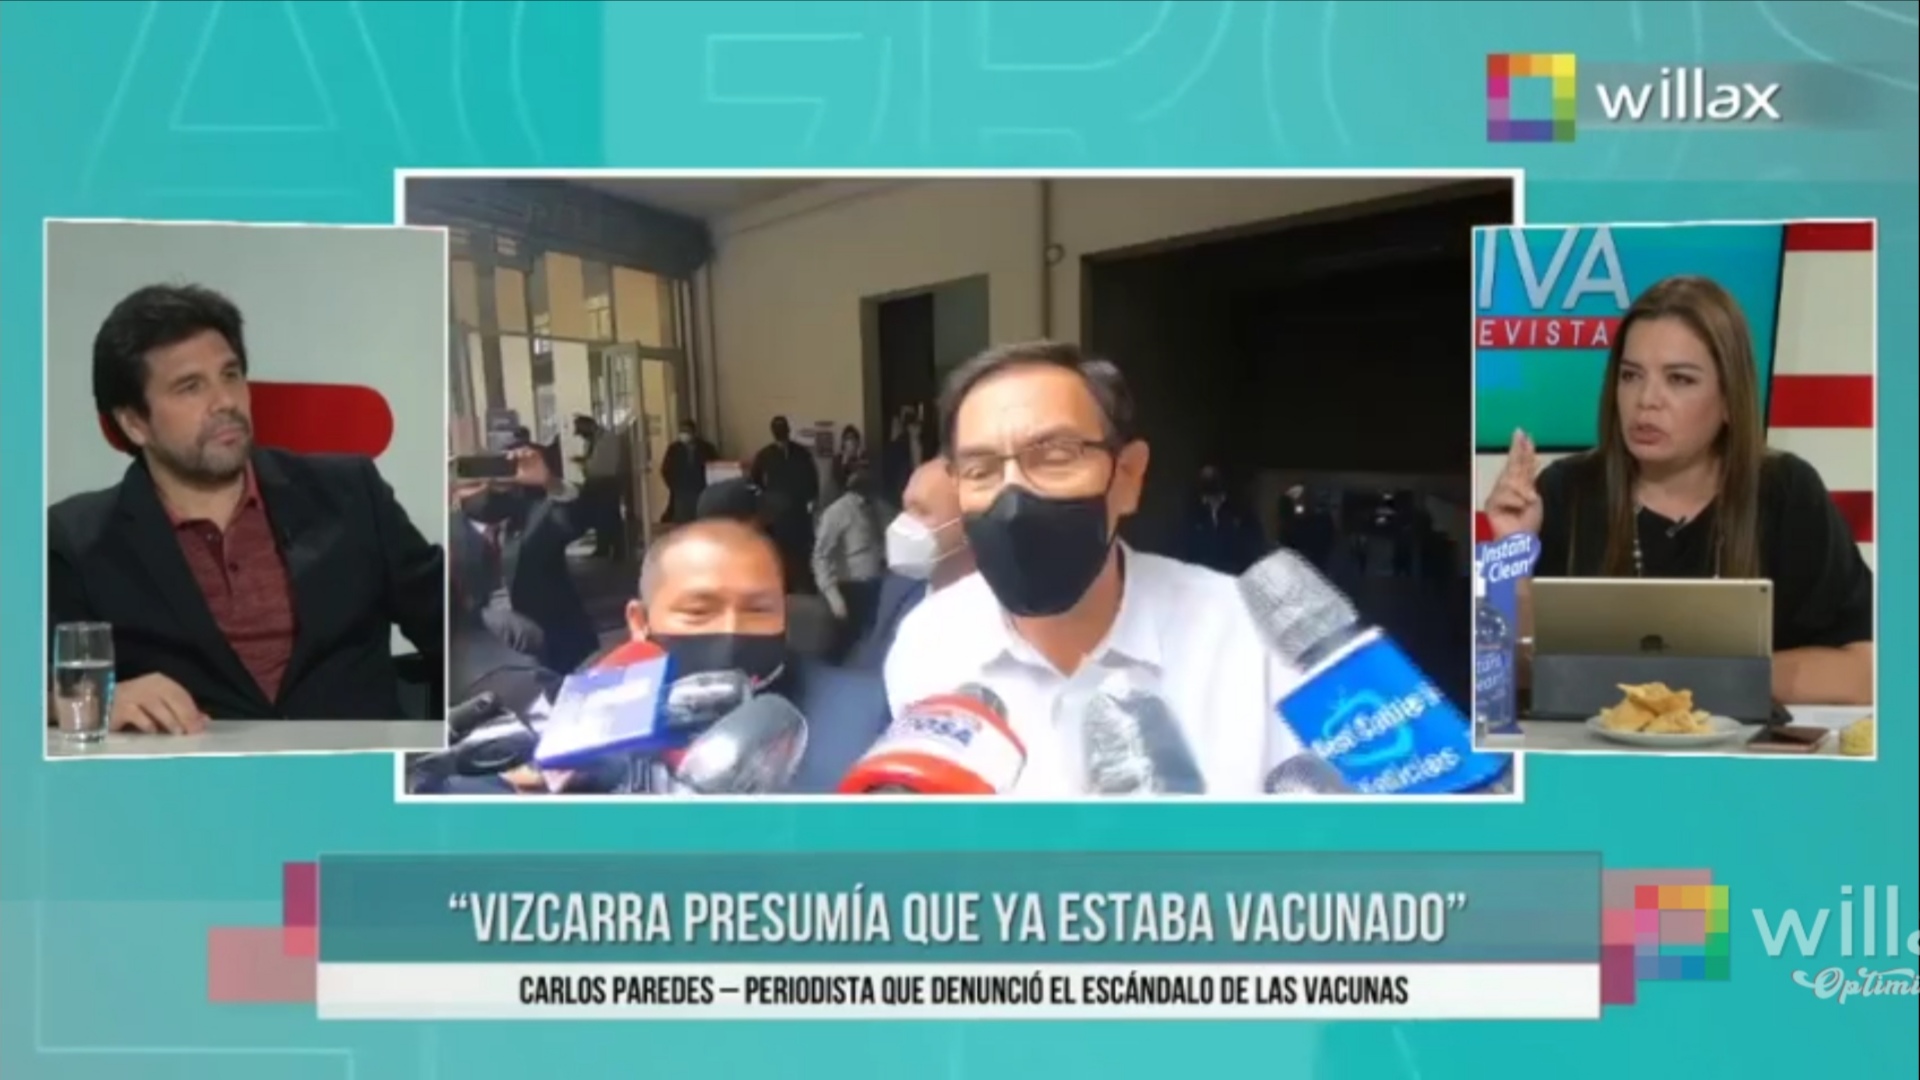 Portada: Carlos Paredes: “Vizcarra presumía ya haber sido vacunado”